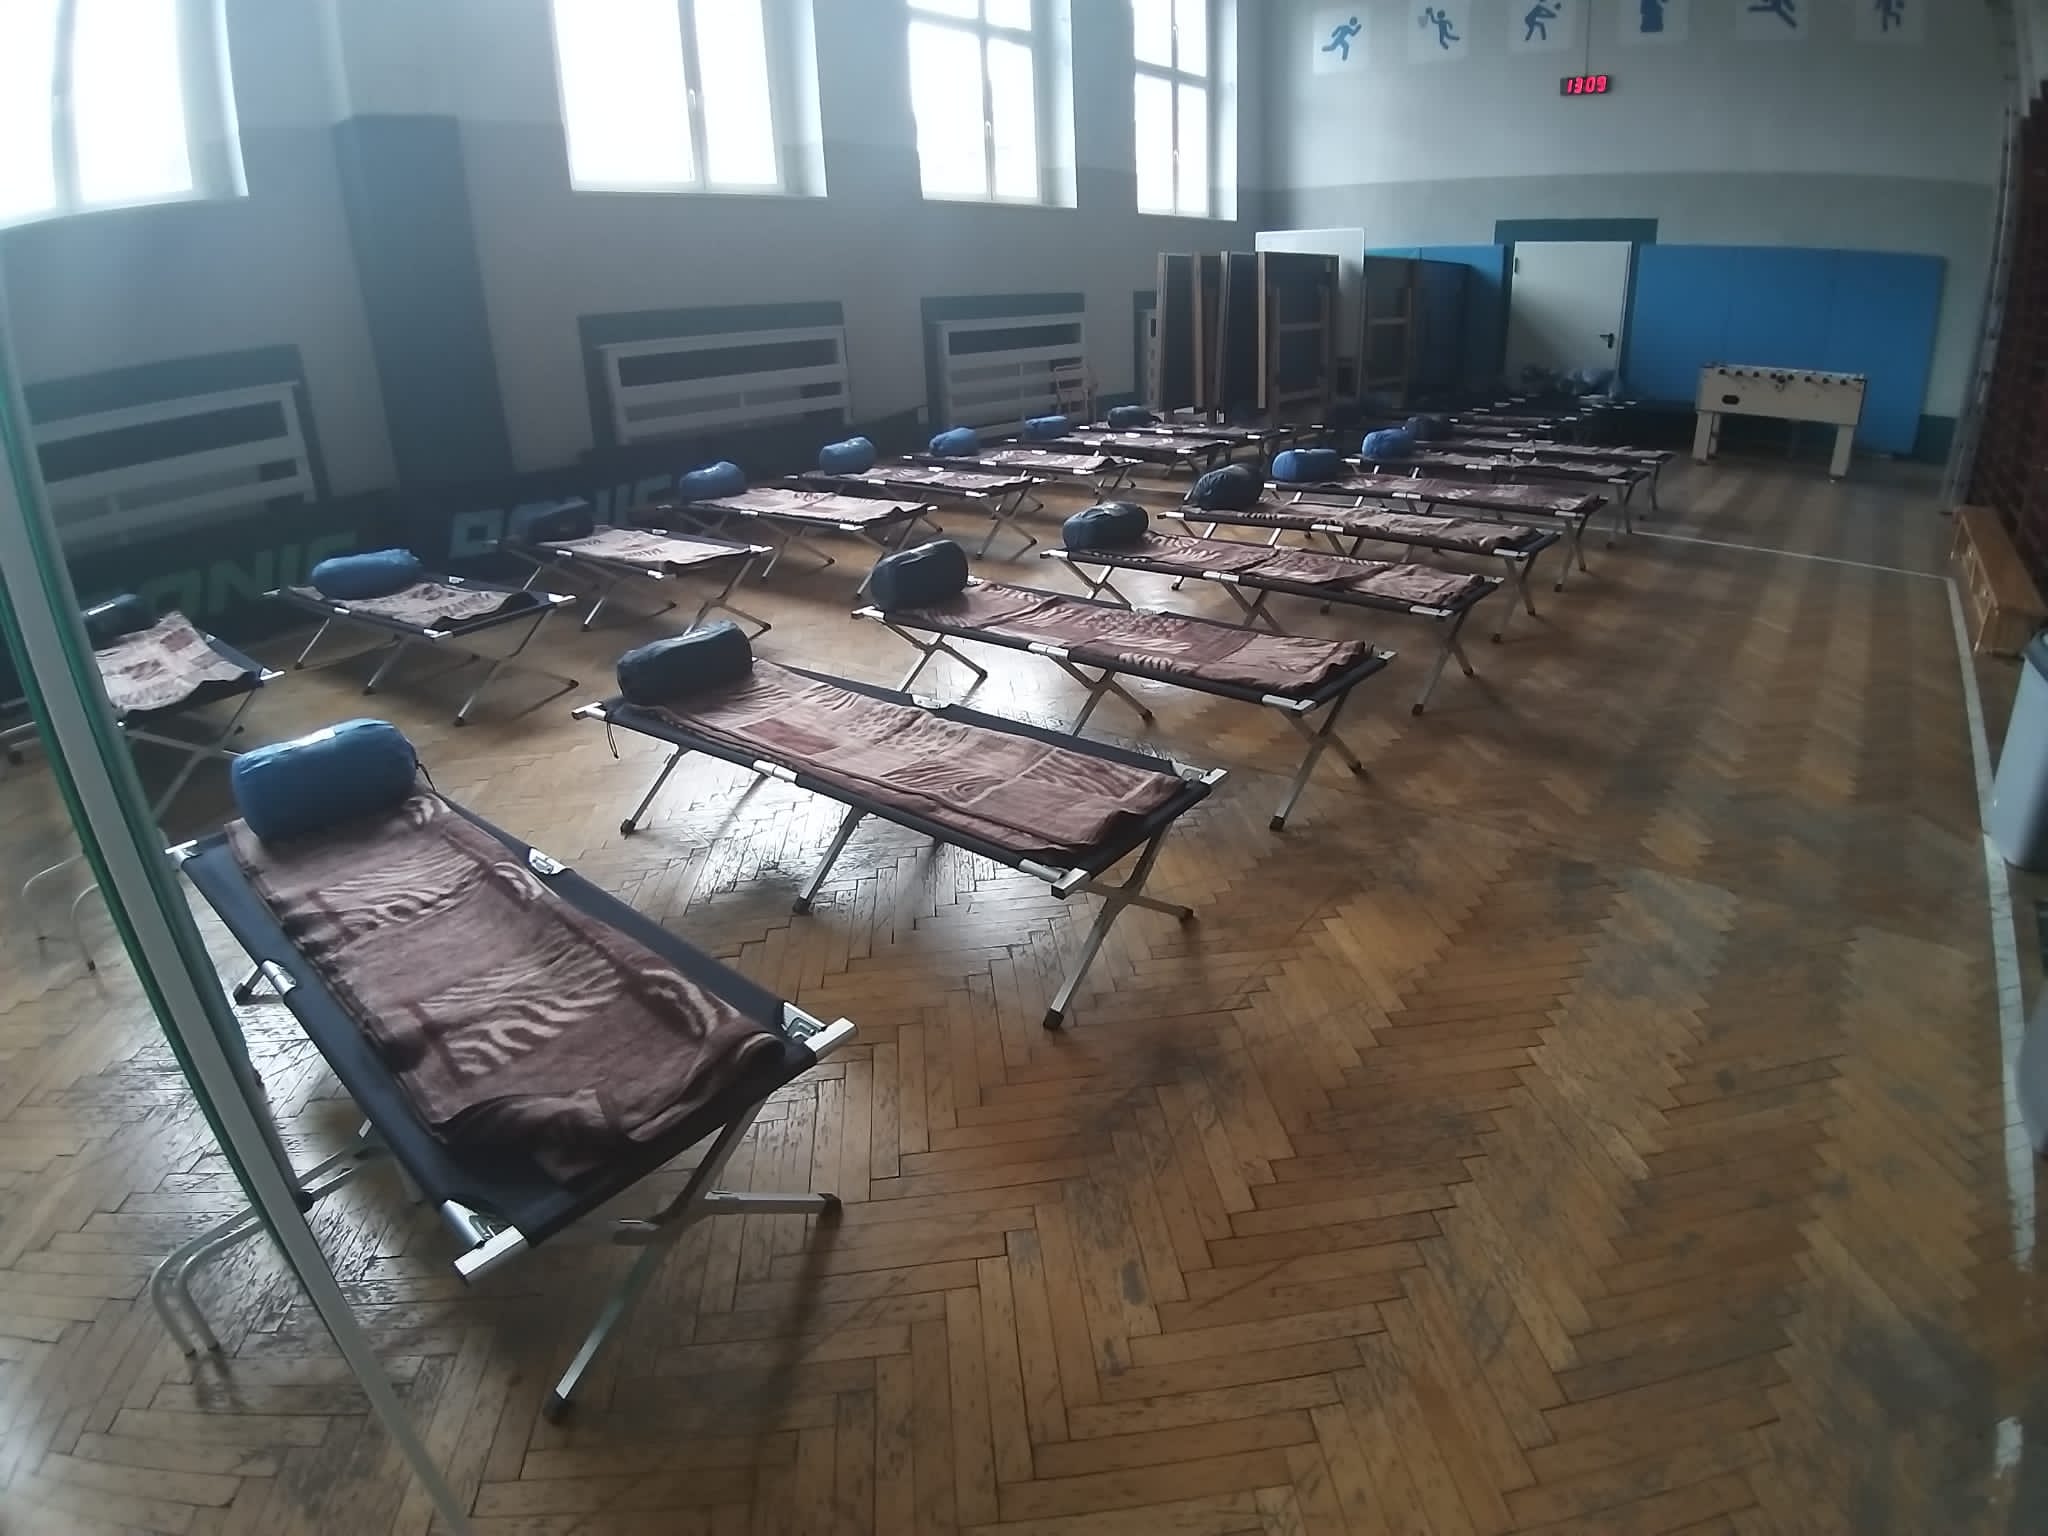 zdjęcia pomieszczenia przygotowanego do przyjęcia uchodźców